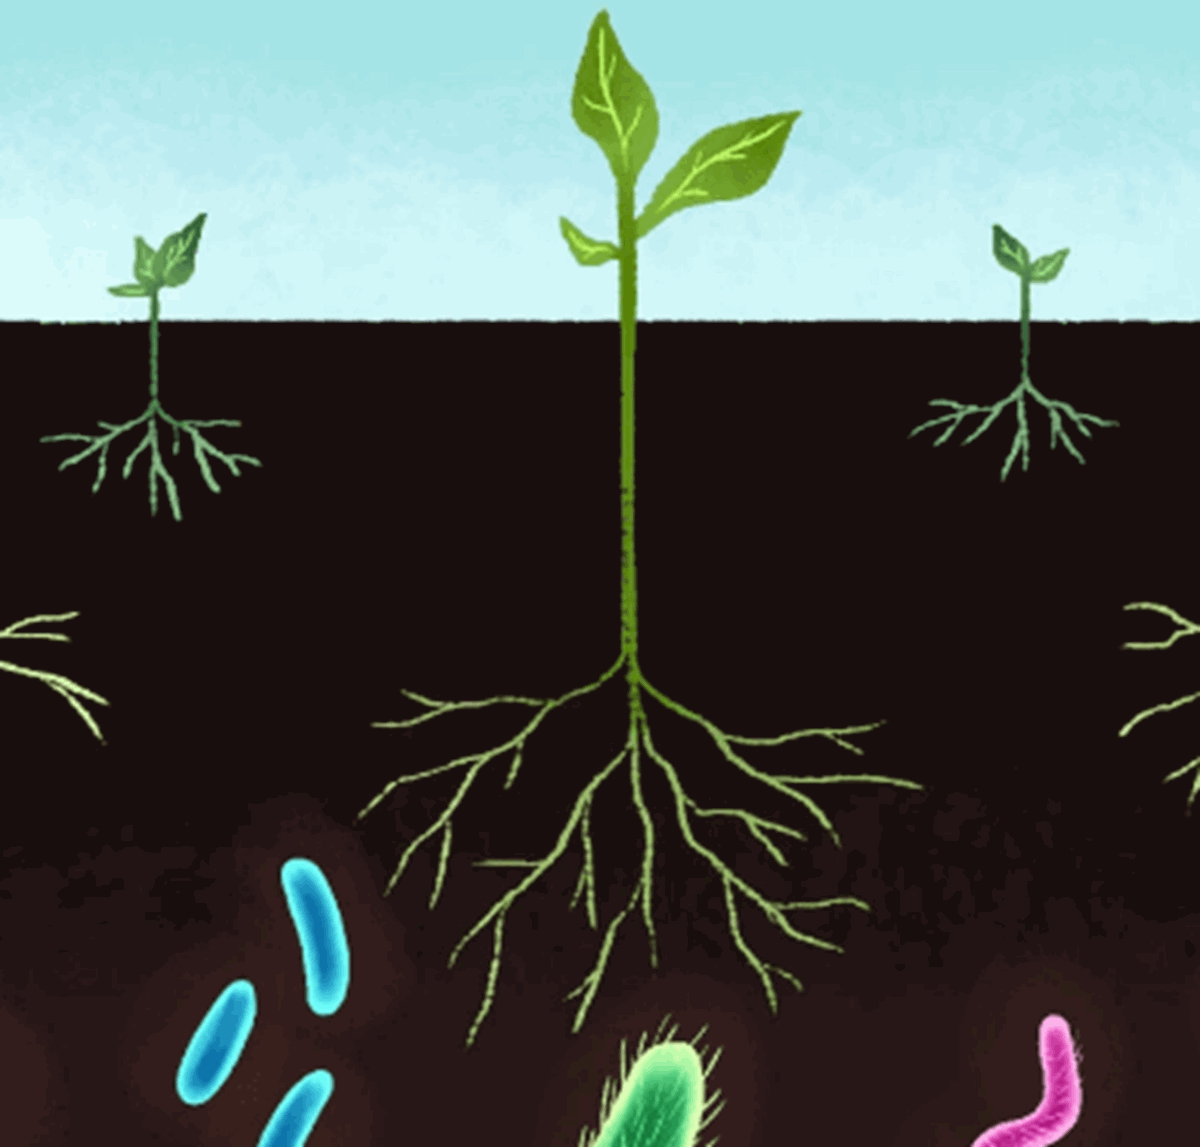 soil-friendly microbes